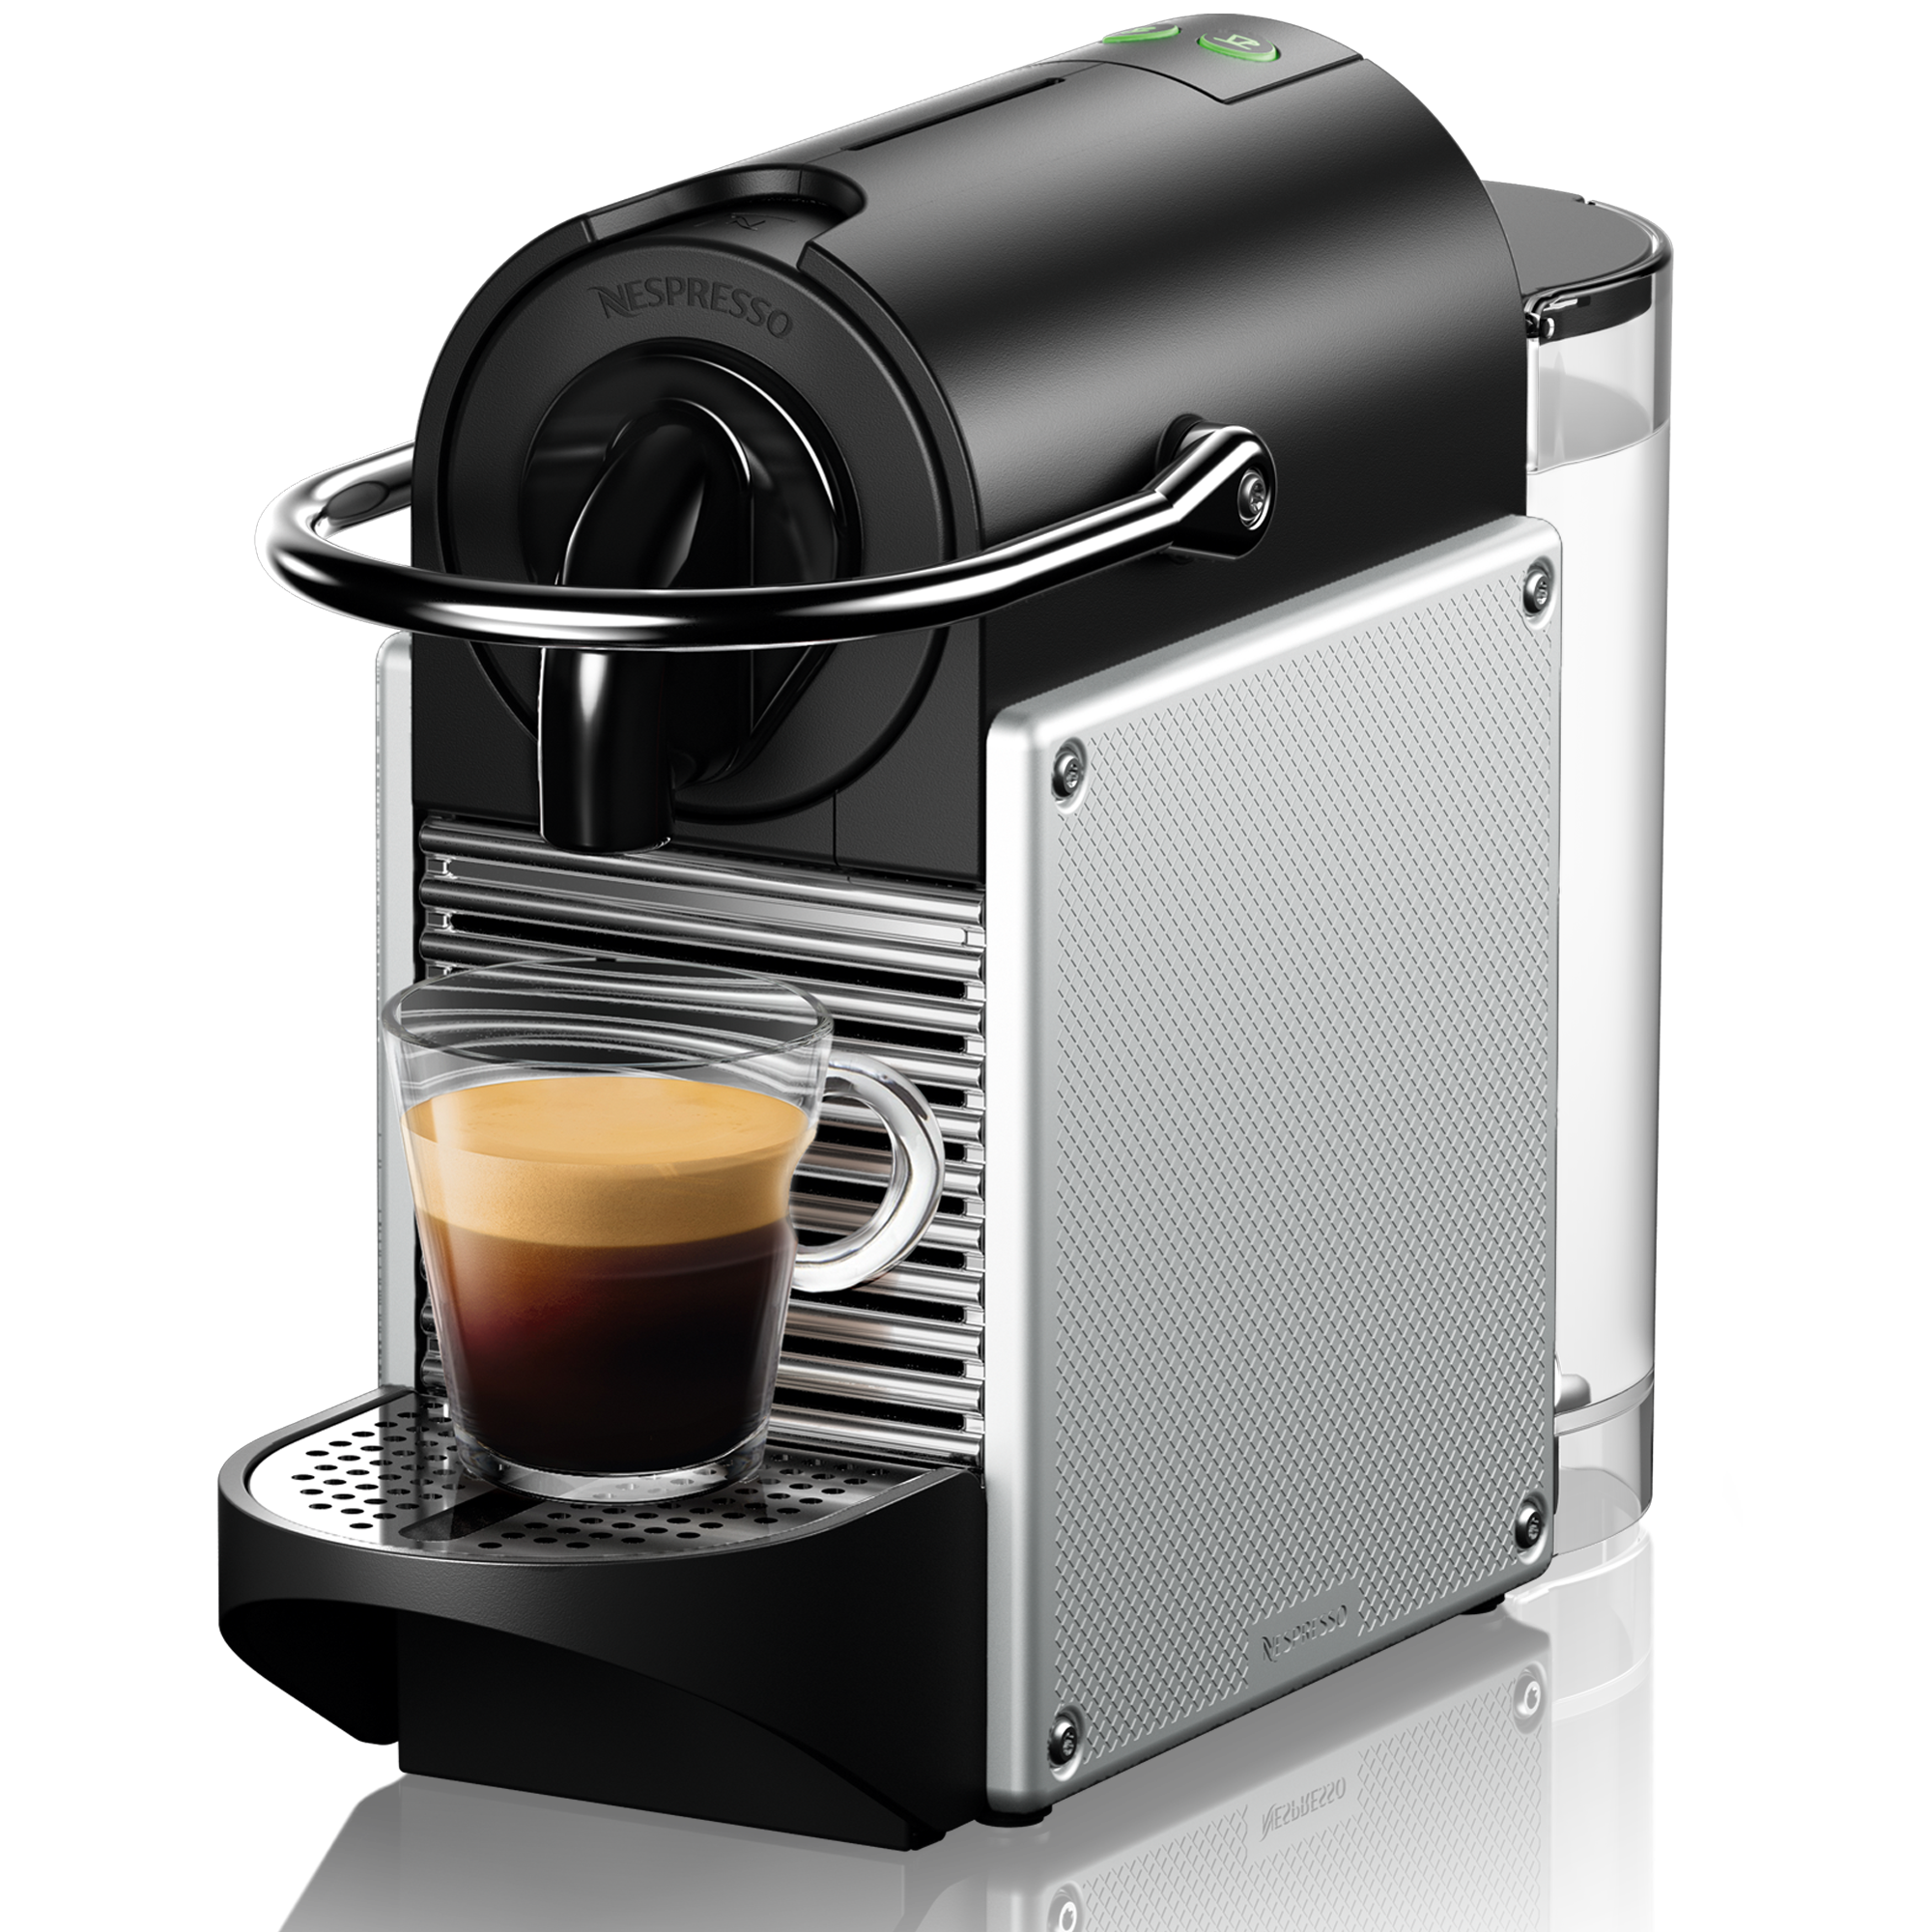 Nespresso - Machine Details Page